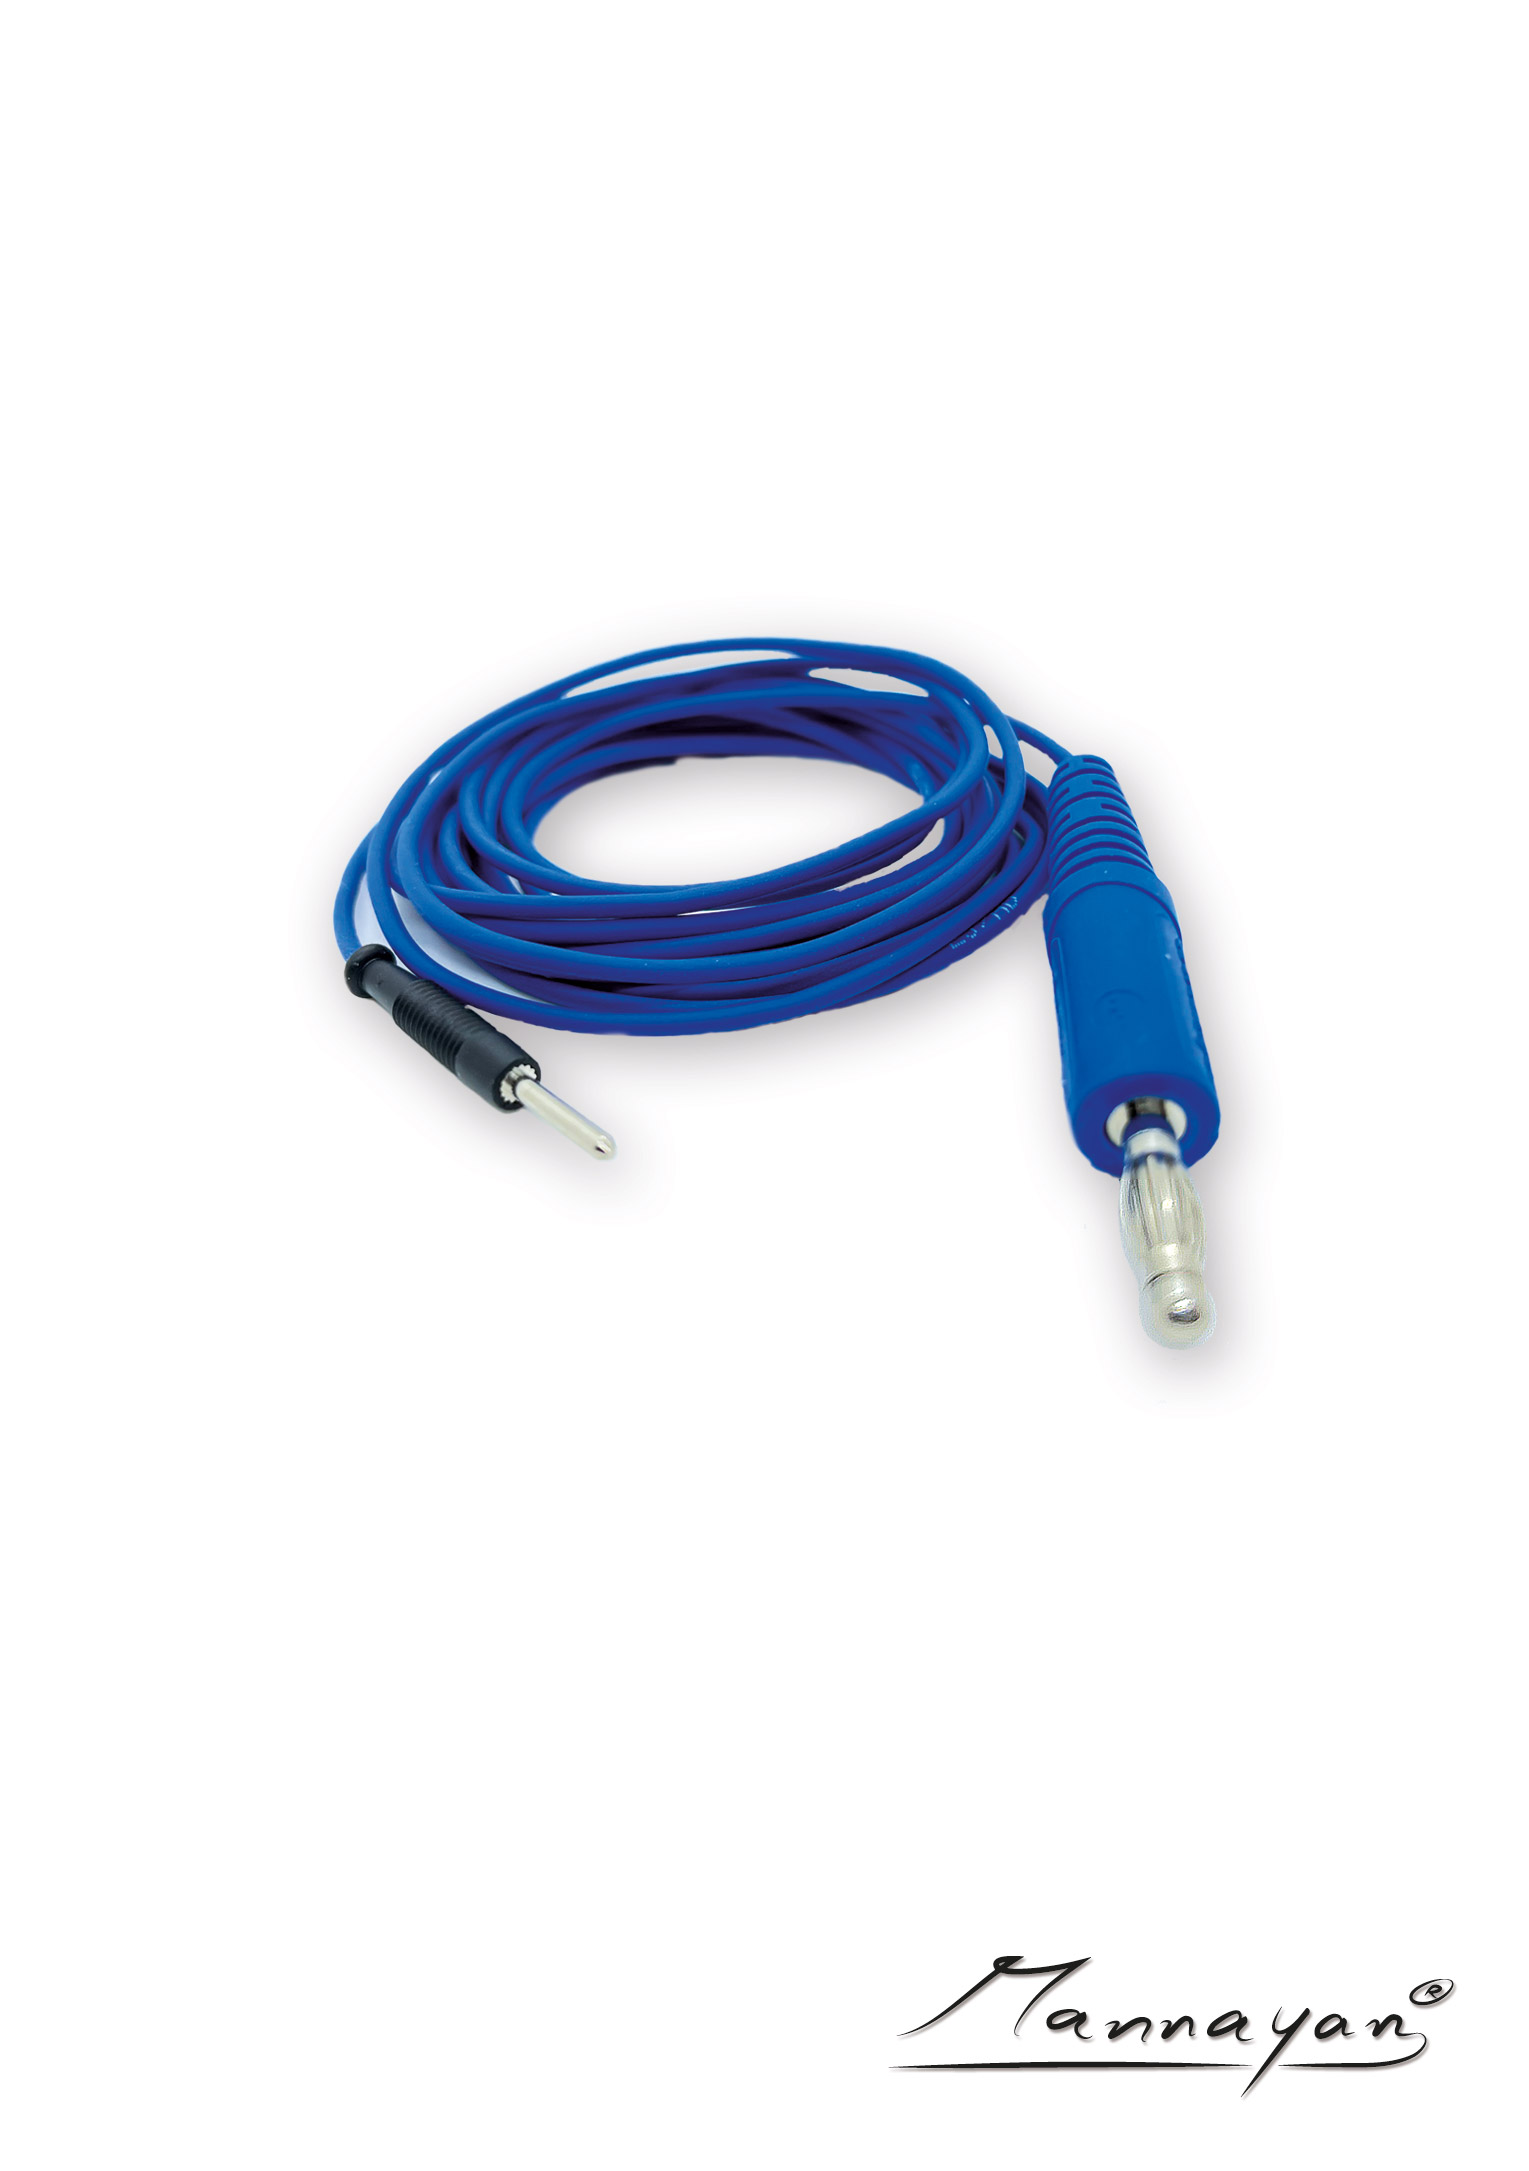 Cable (2,5 m) con adaptador de conector para electrodos textiles de superficie (azul)